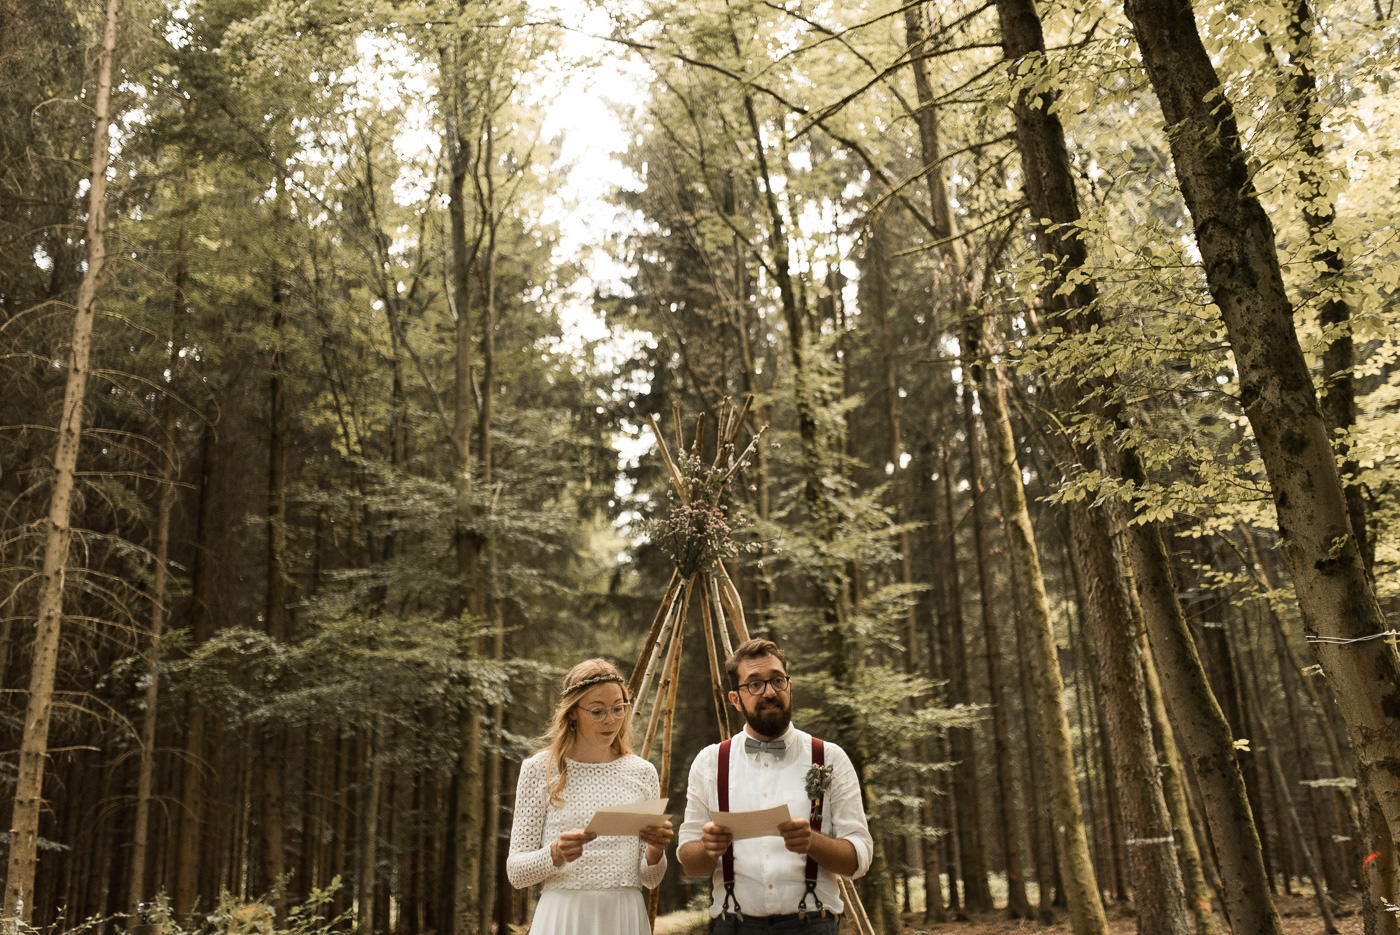 Persönliche Worte von Brautpaar an Hochzeitsgäste bei Trauung zwischen Bäumen